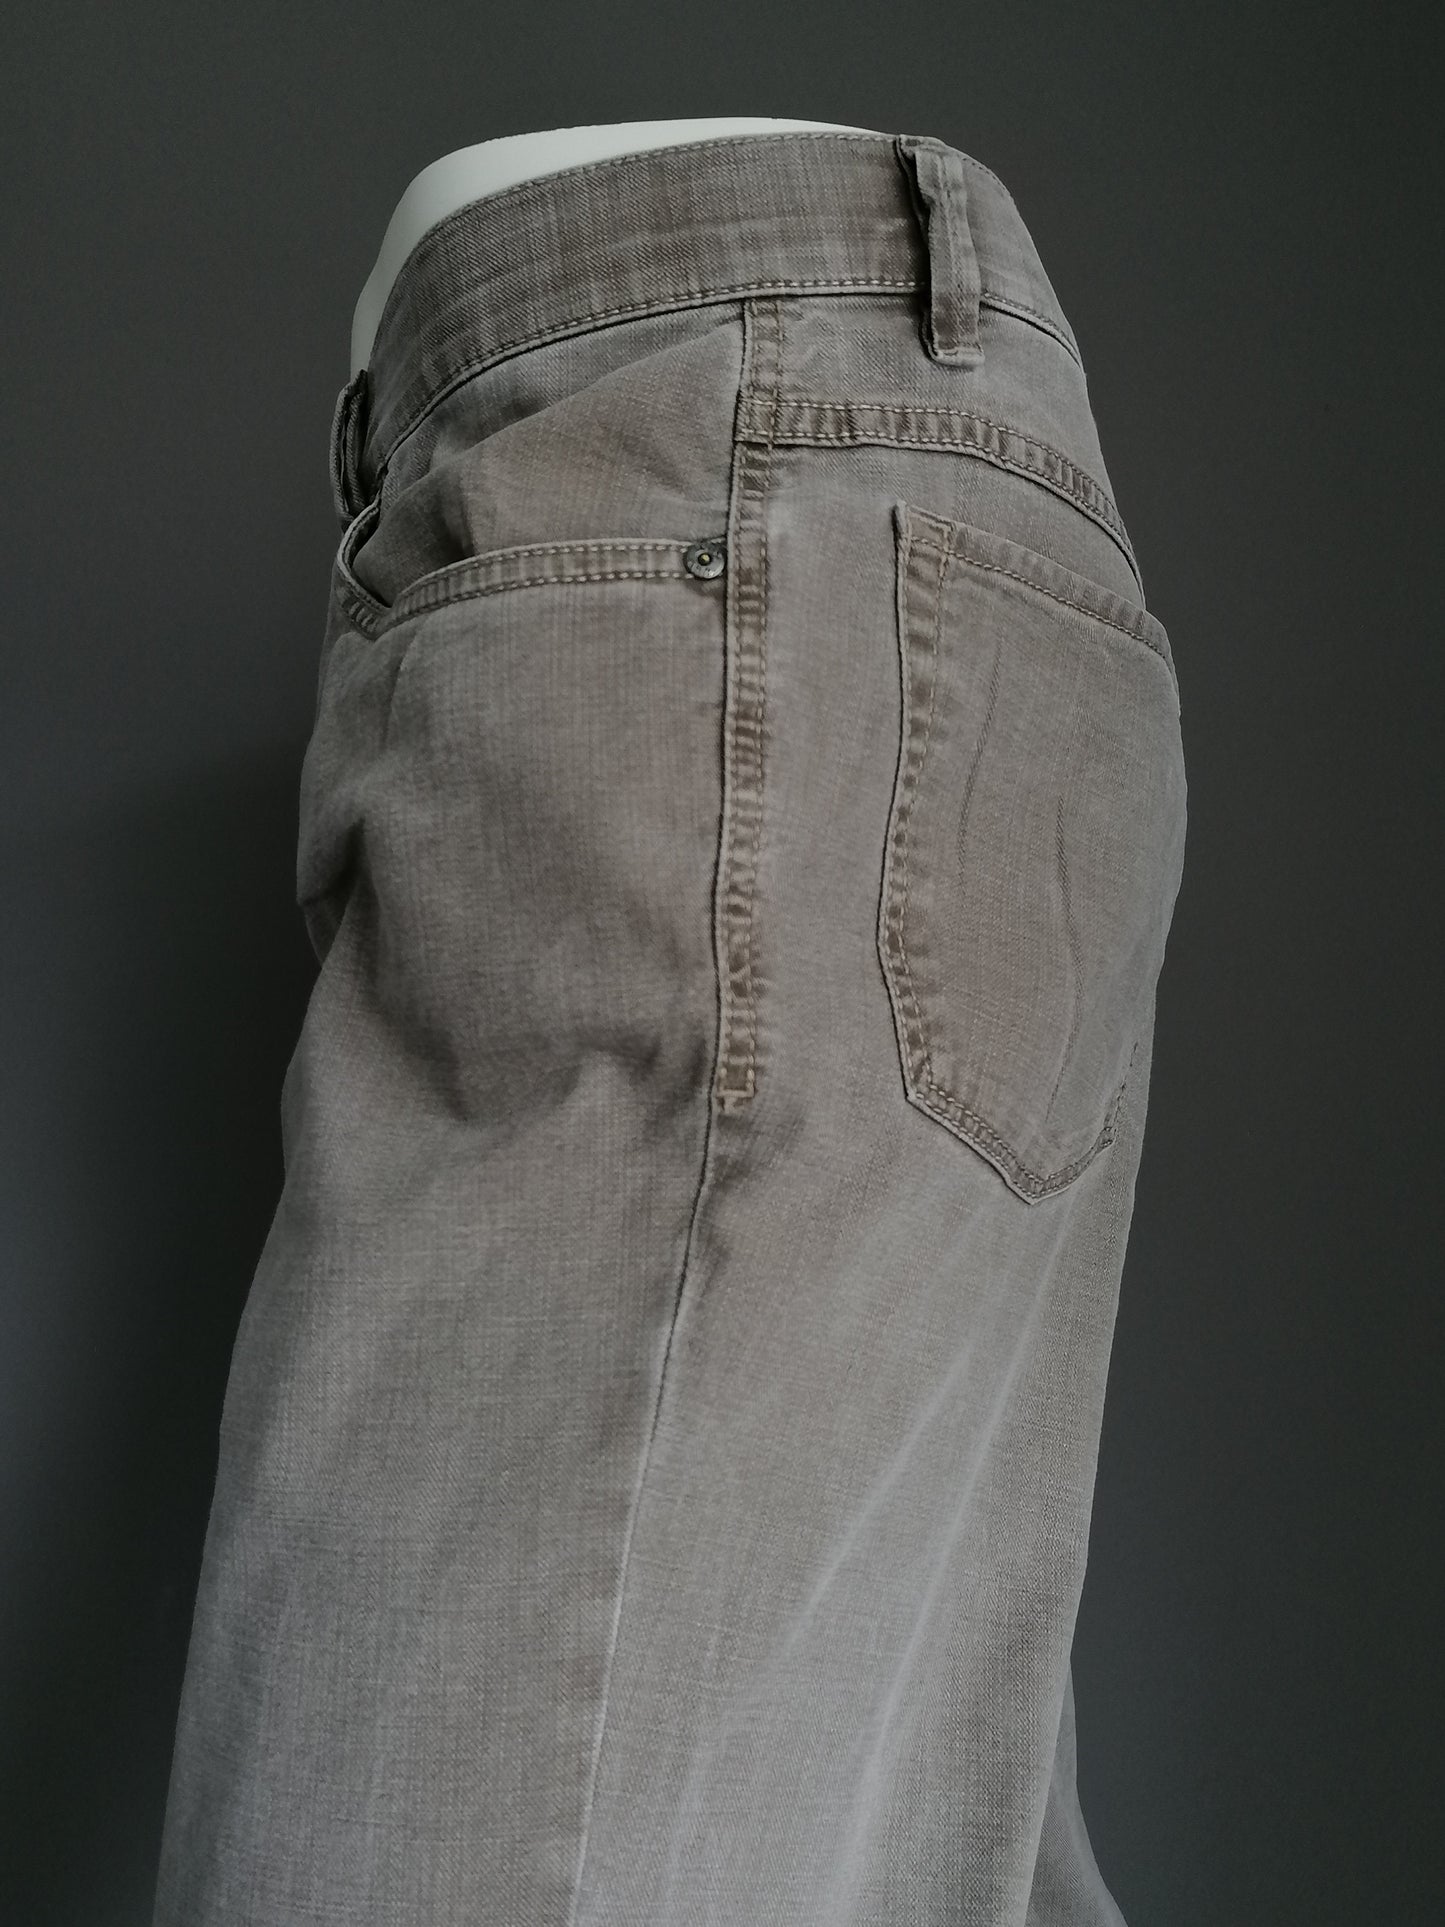 Pantaloni Hiltl. Motivo marrone chiaro. Dimensioni 54 / L. Tipo ZE500. Stirata.